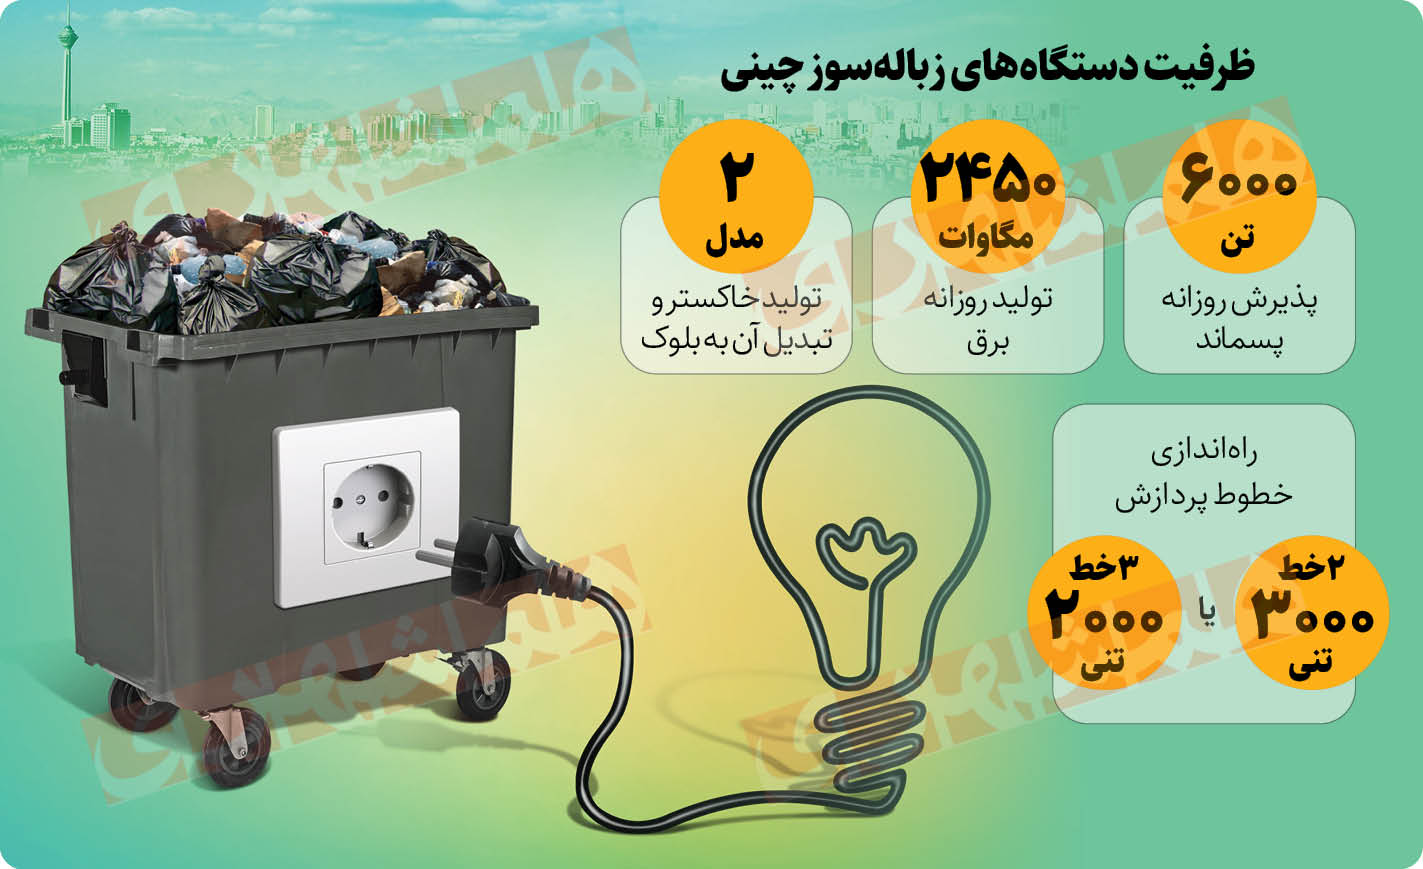 شهرنگار| تولید روزانه ۲/۵ هزار مگاوات برق تهران با پسماندها